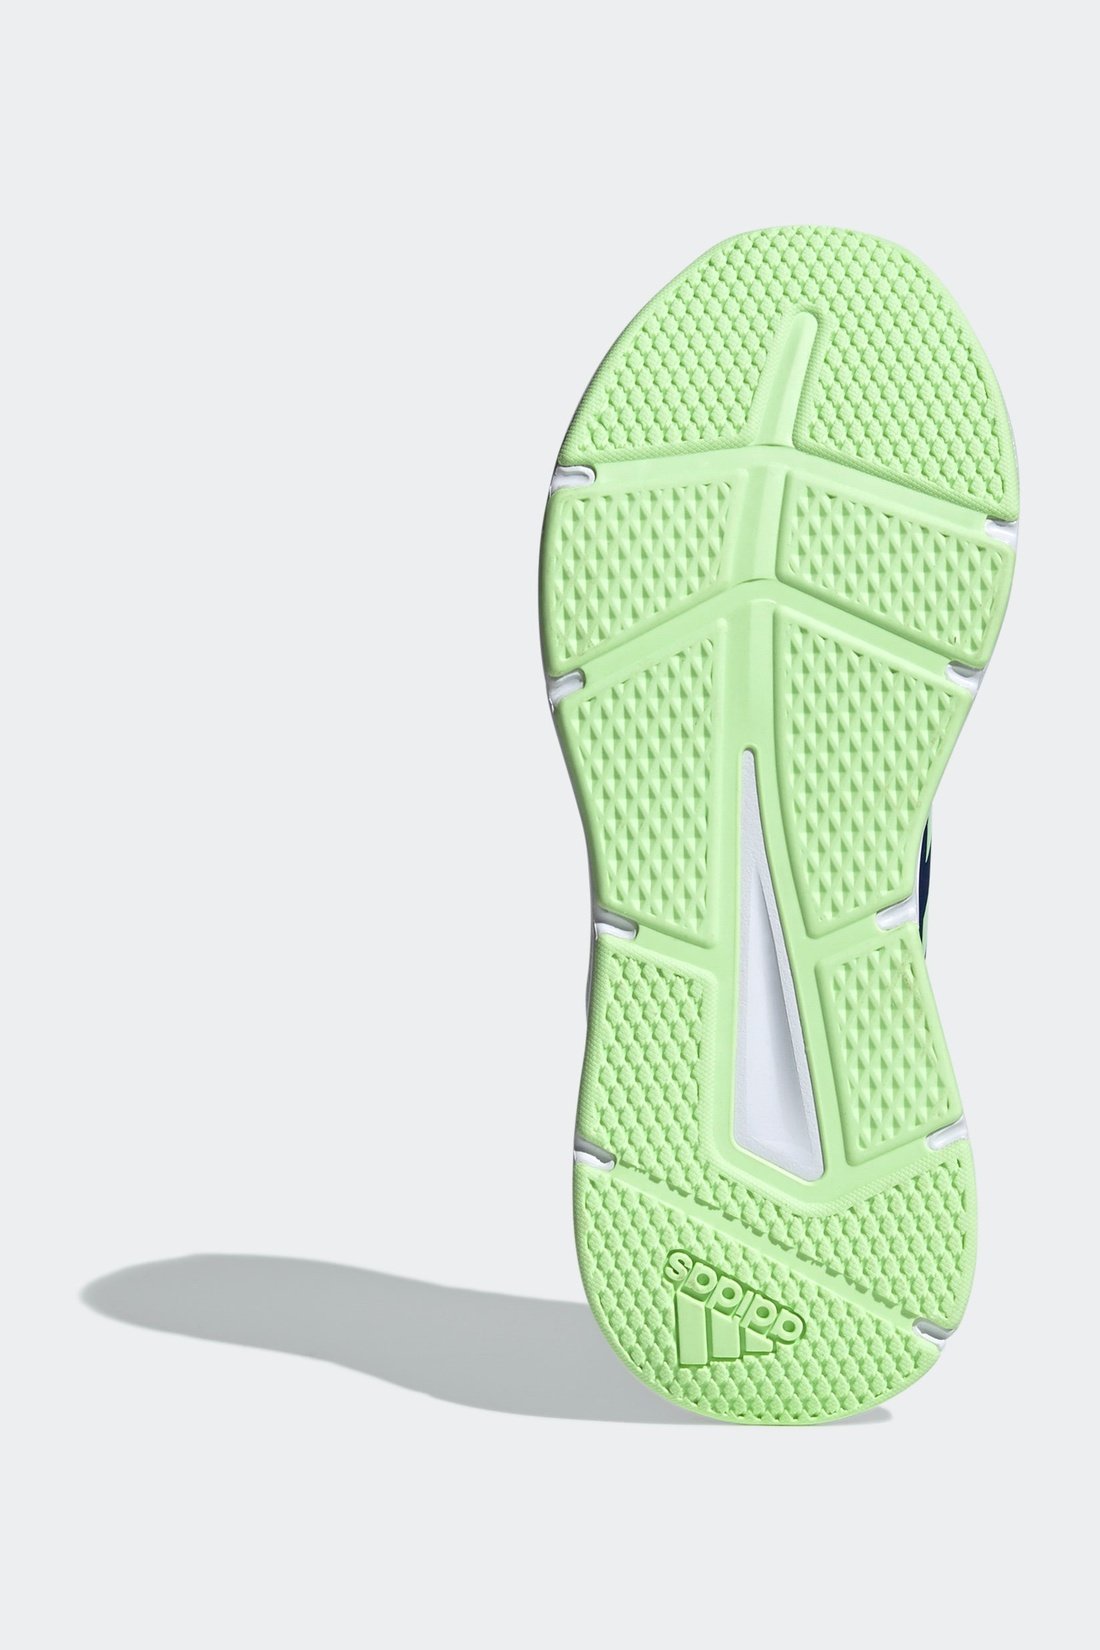 נעלי ספורט לגברים GALAXY 6 בצבע נייבי וירוק